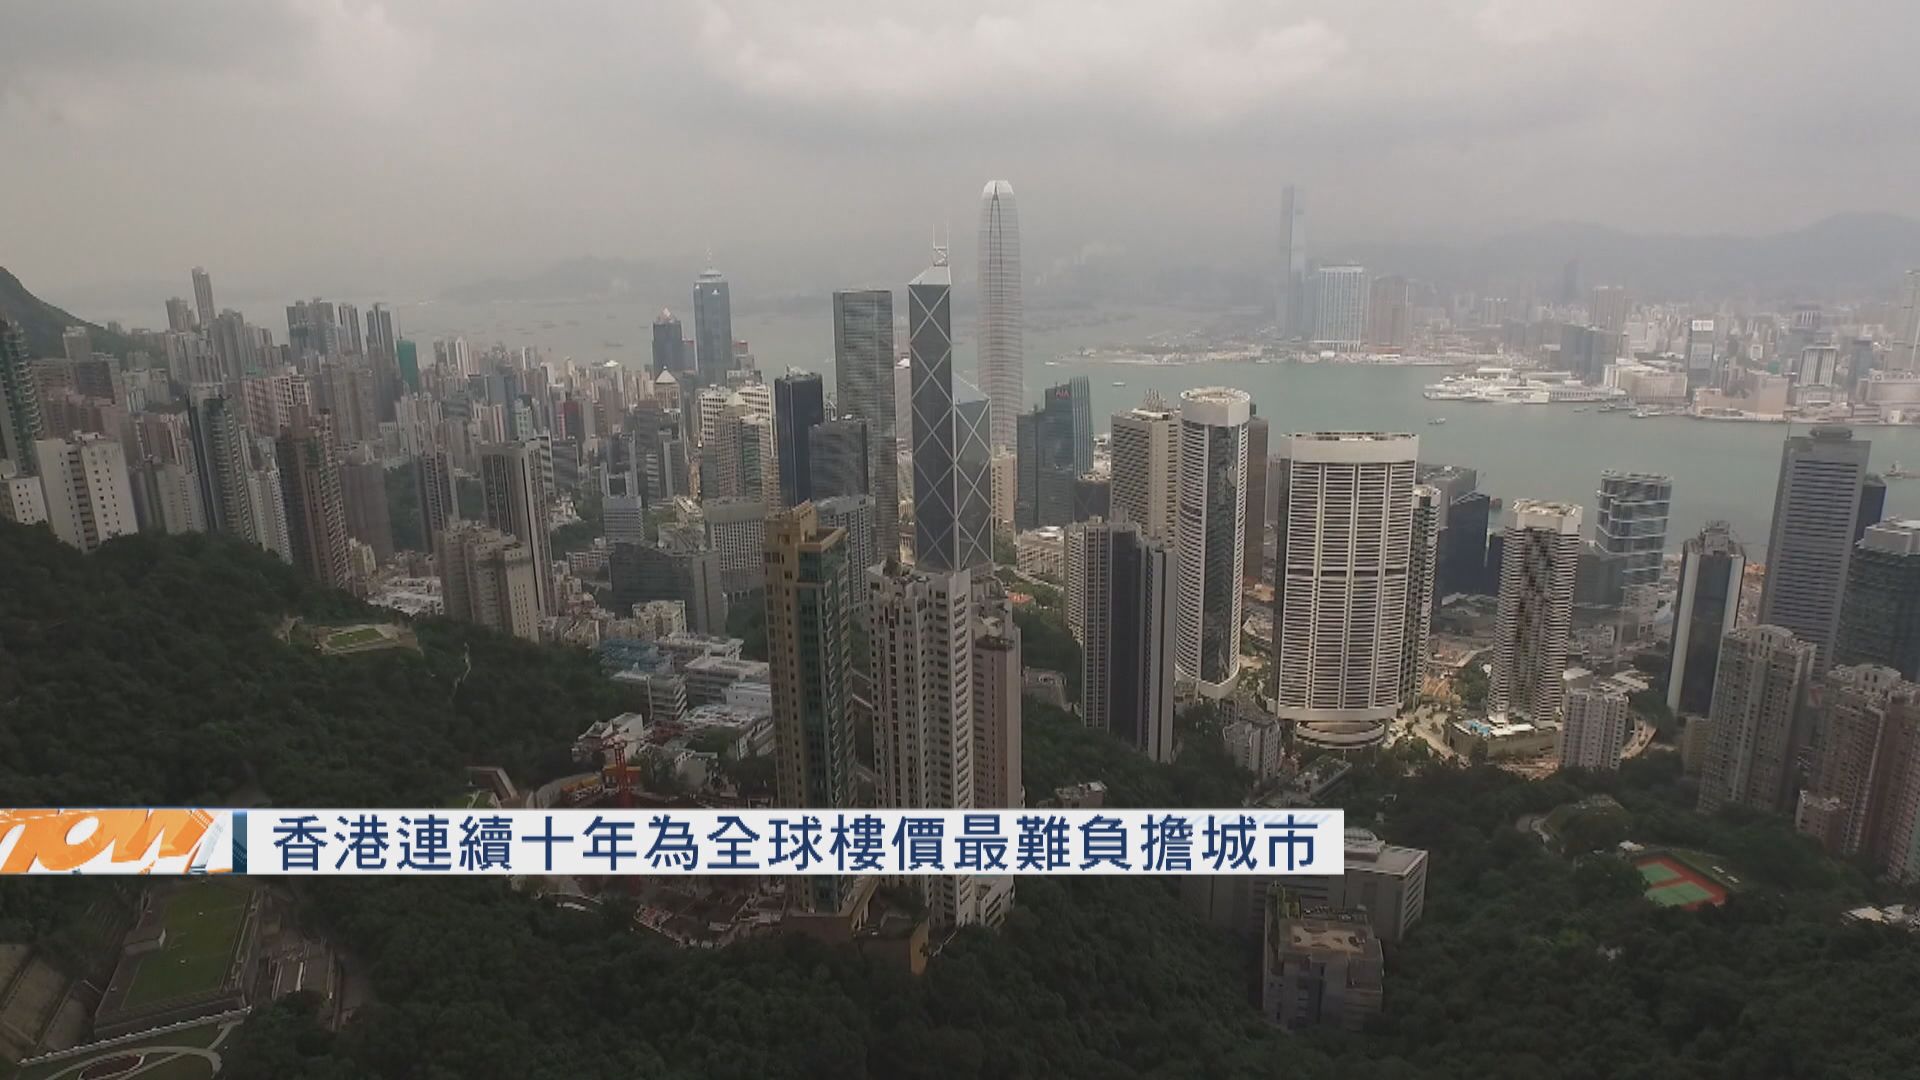 香港連續十年為全球樓價最難負擔城市